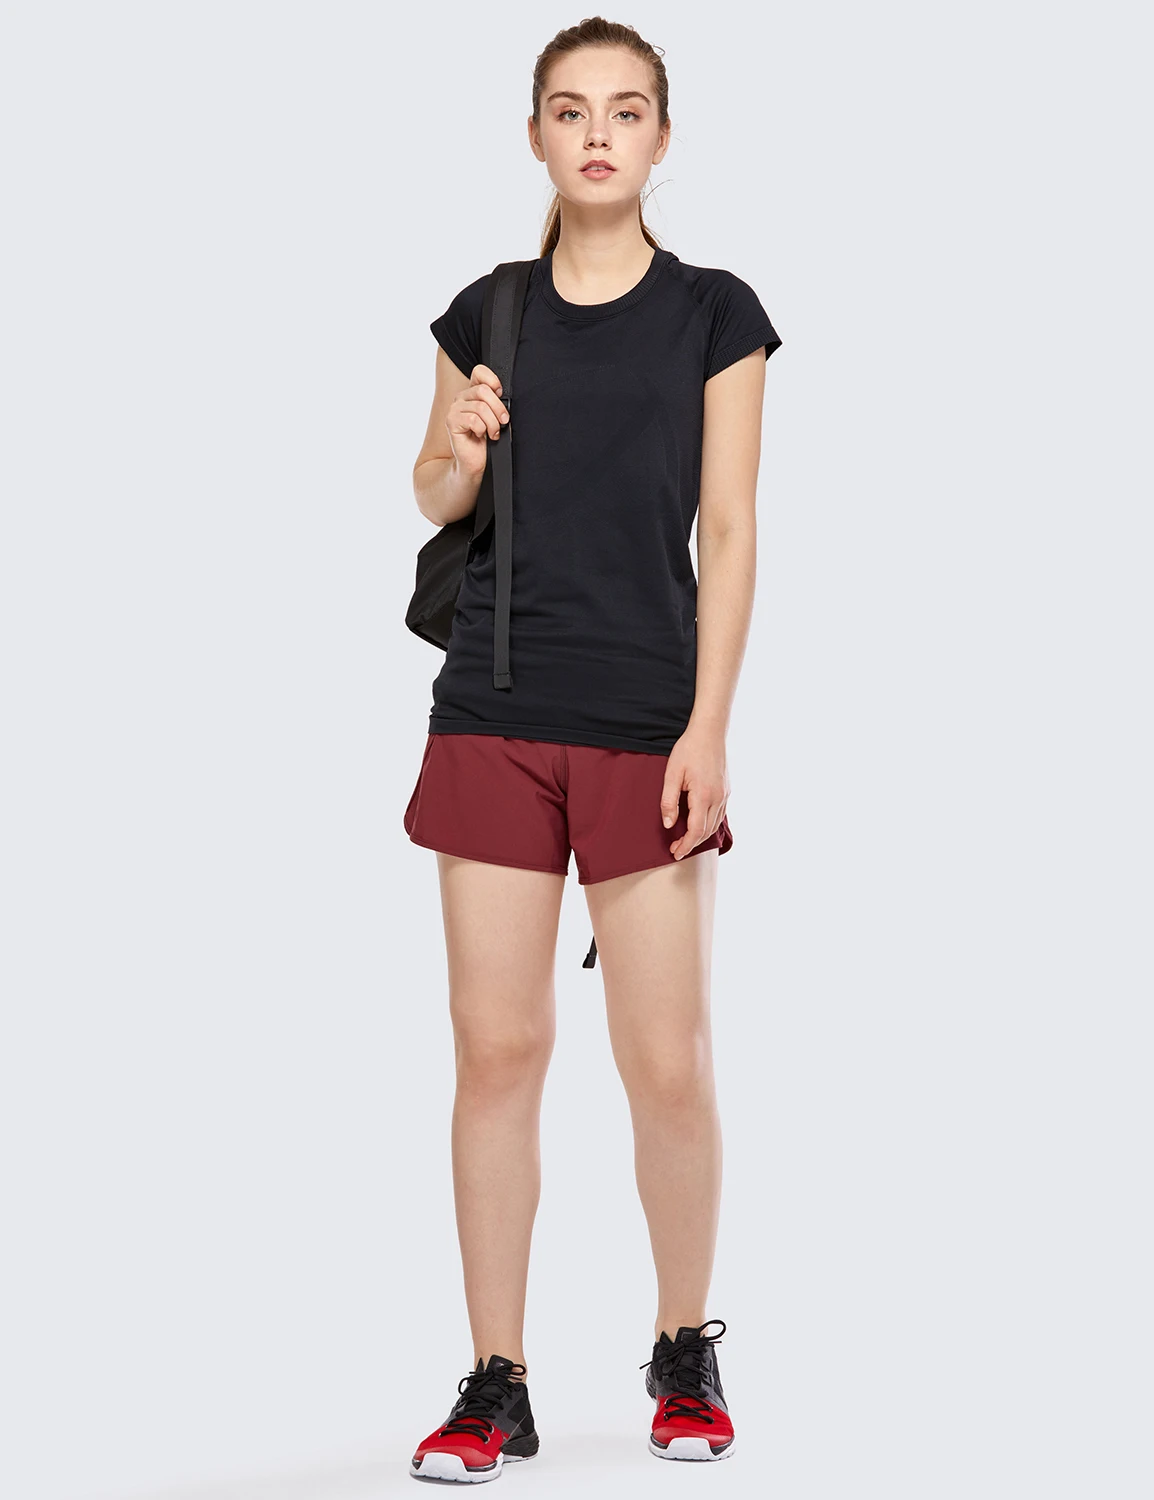 CRZ Йога женские тренировки спортивные беговые шорты брюки с карманом на молнии-4 дюйма